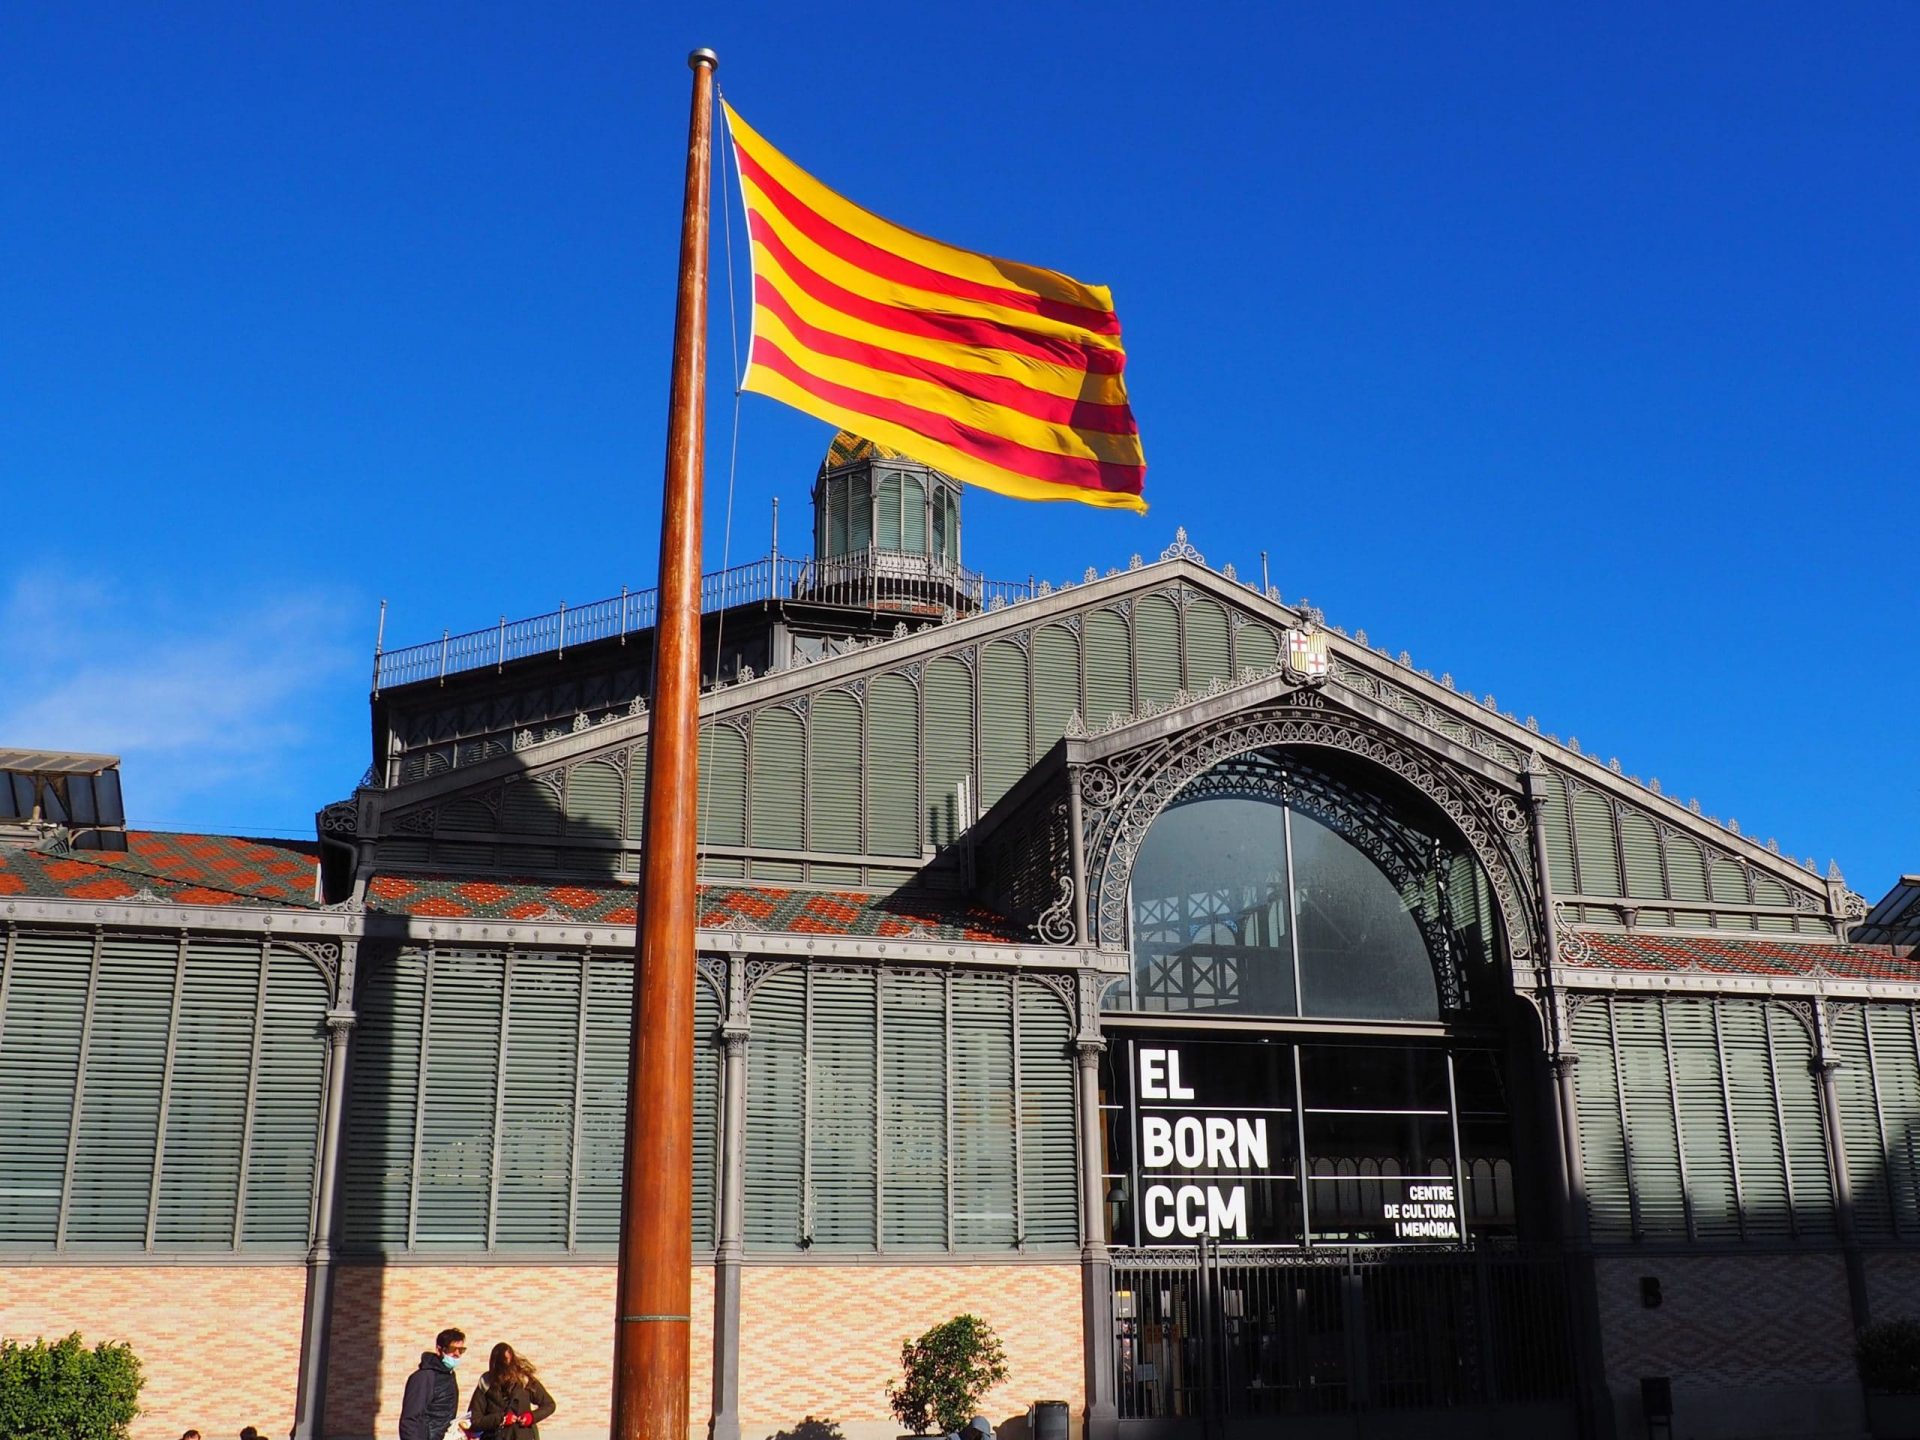 The catalan flag and a market building. El Born CCM. Centre de cultura i memòria. Barcelona